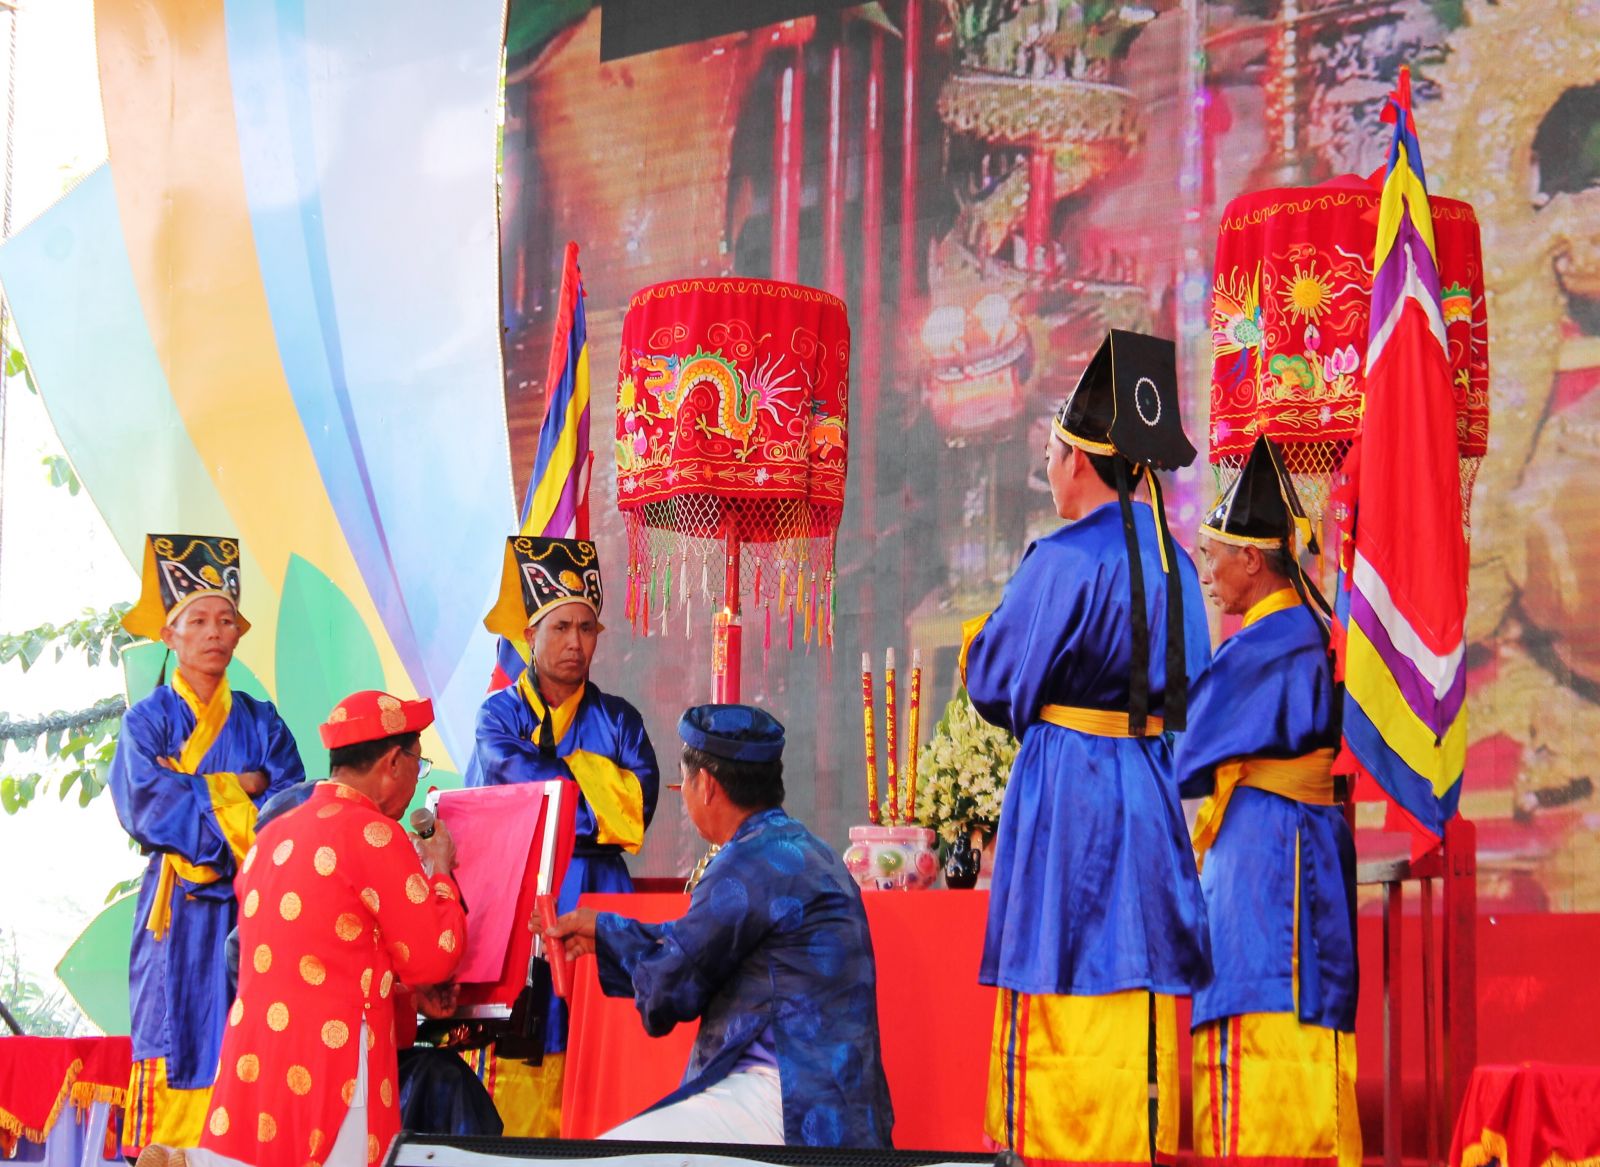 Mở đầu lễ hội là nghi thức cúng tế trời đất, tạ ơn thần linh đã cho mưa thuận gió hòa, mùa màng bội thu do các bô lão Đình Tân Lộc Đông thực hiện.